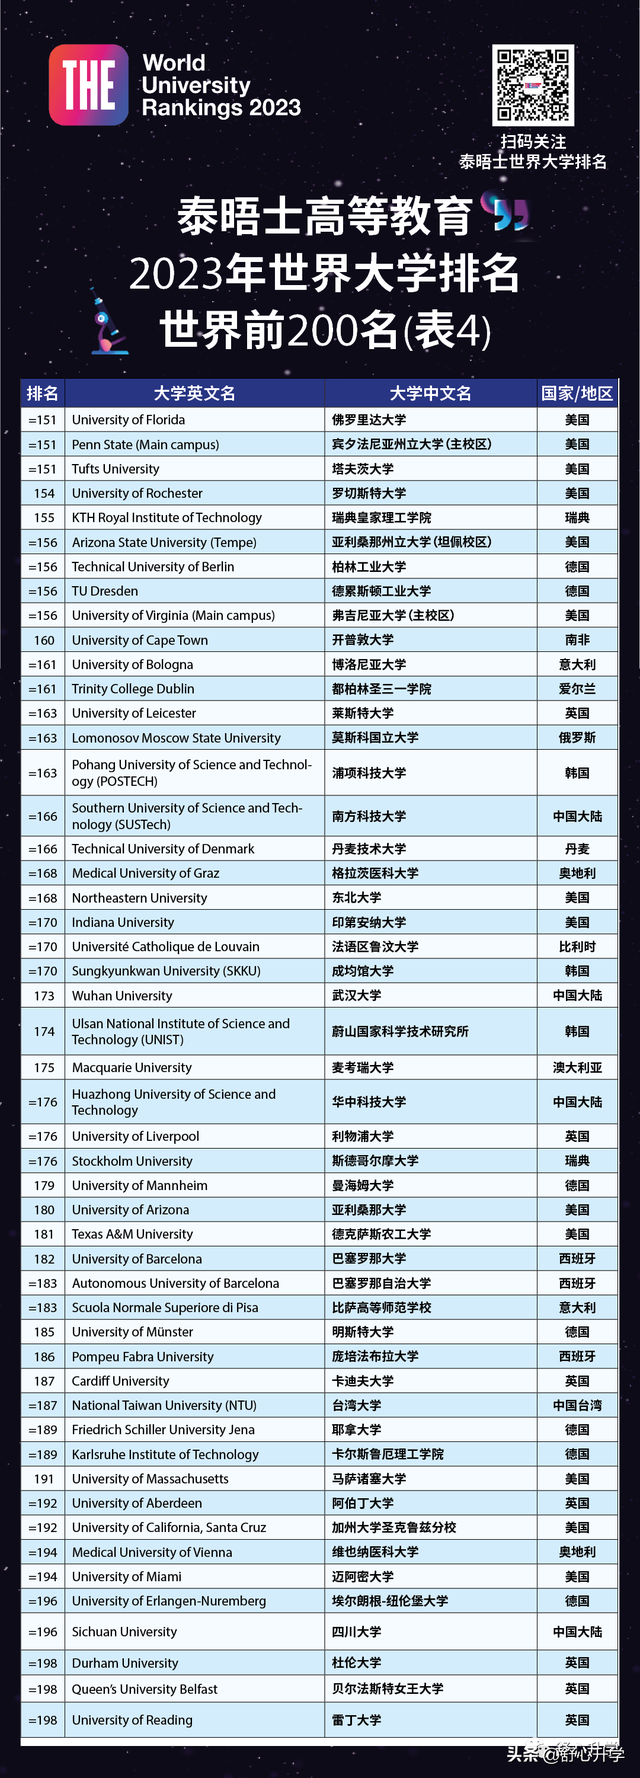 2023年THE泰晤士高等教育世界大學排名